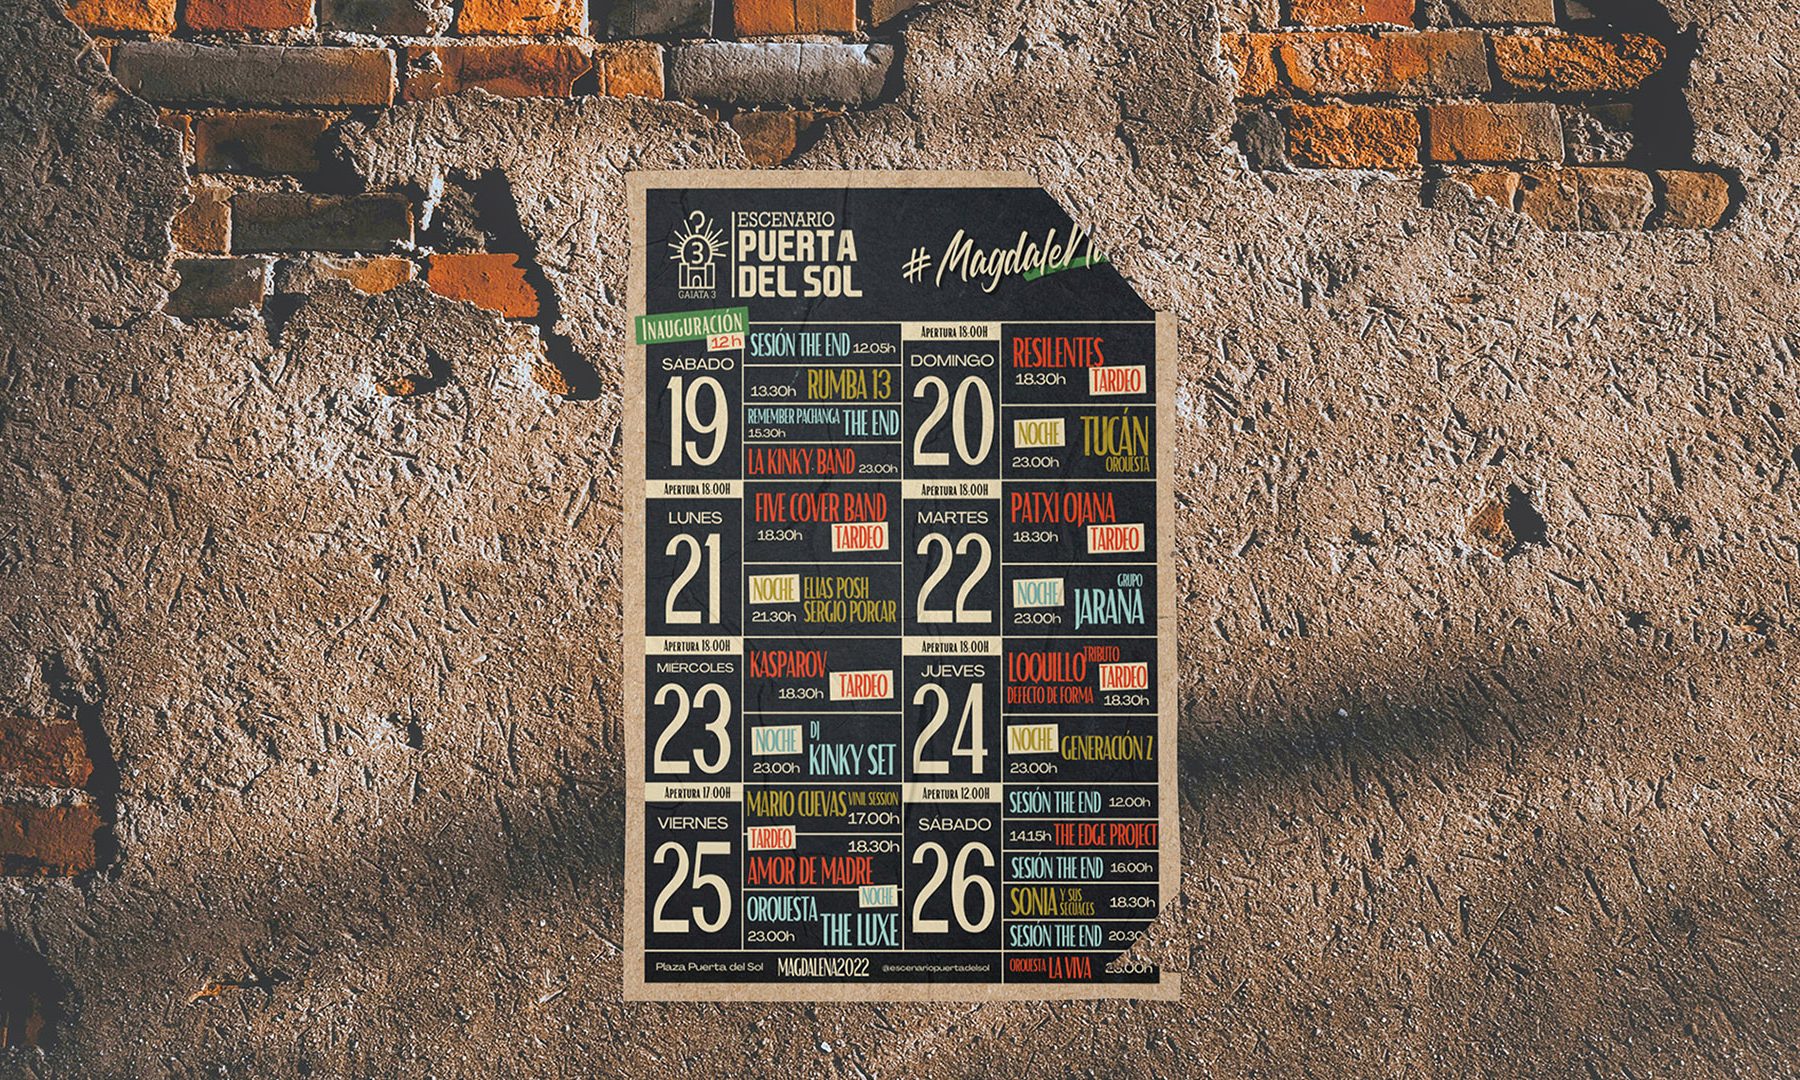 Escenario Puerta Del Sol 2022 cartelería